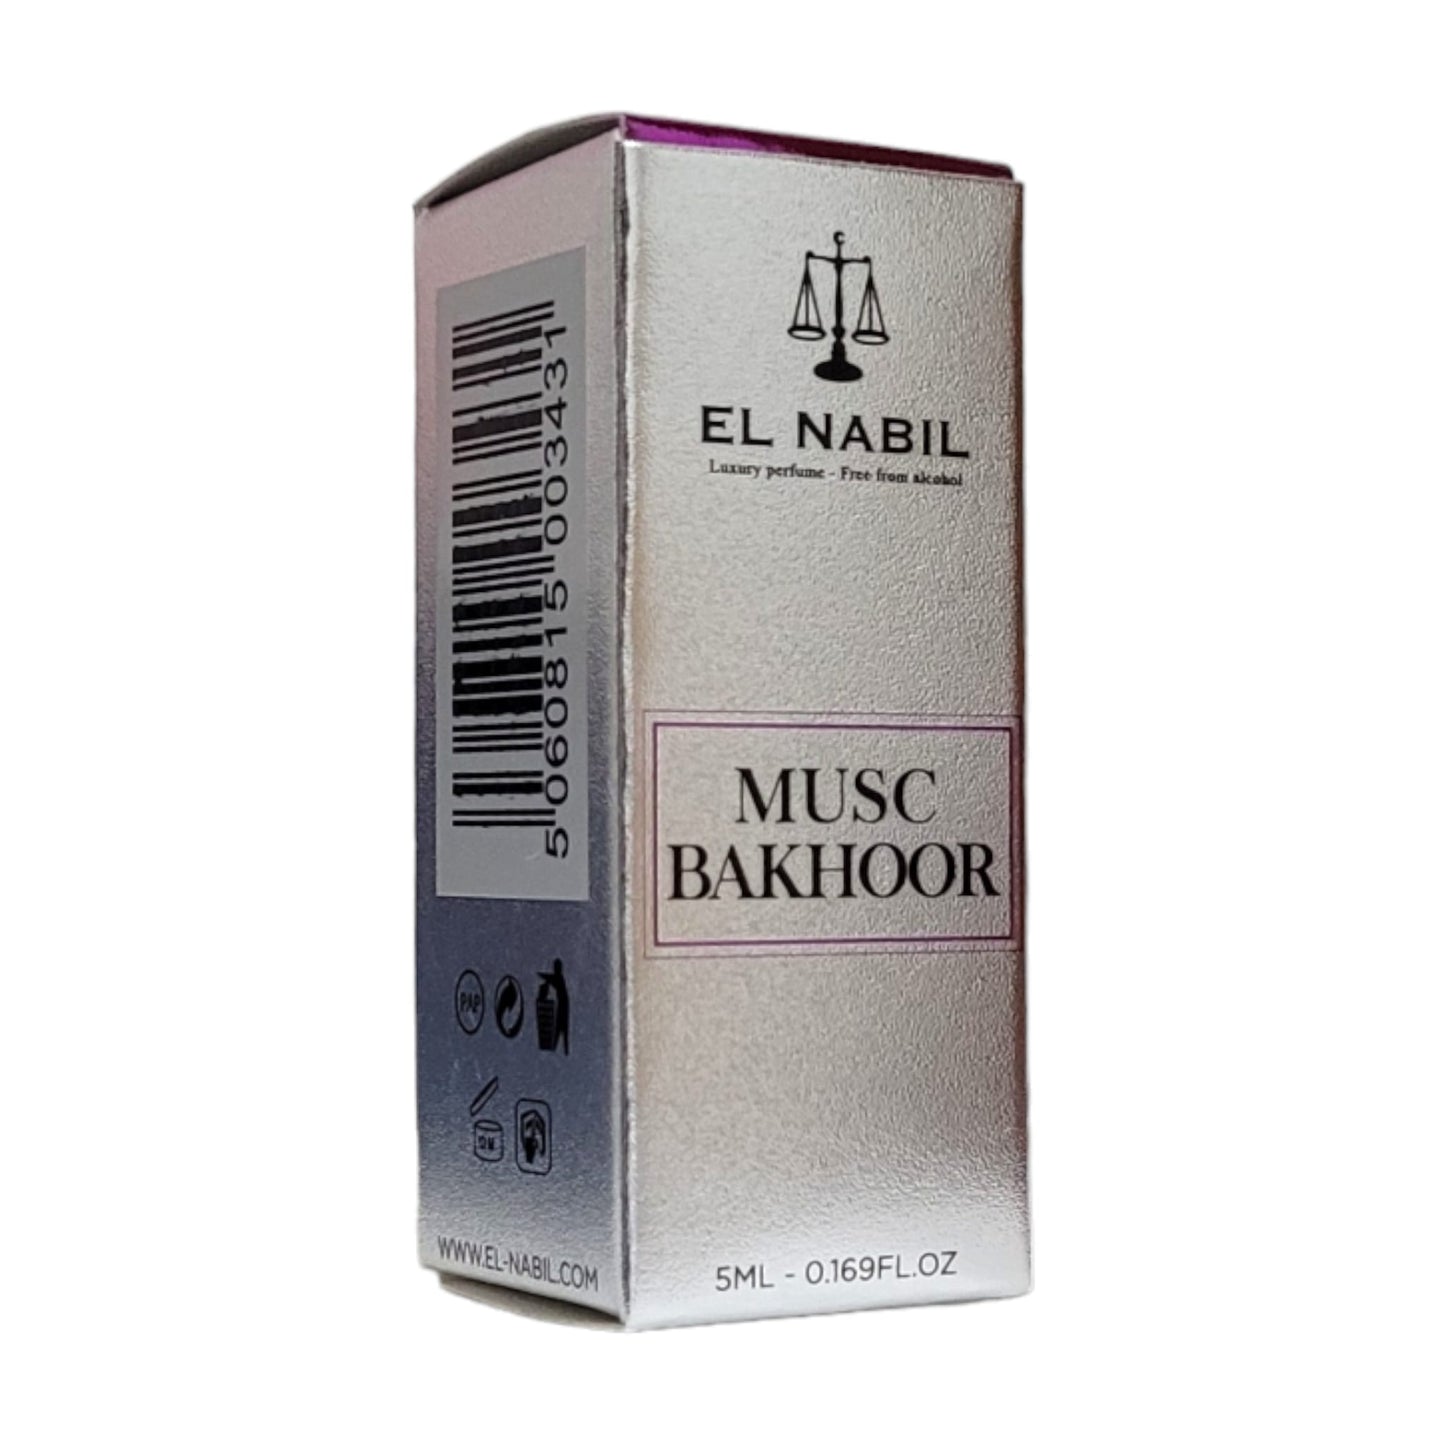 El Nabil Musc Bakhoor Parfum Öl mit Roll-On-Applikator 5 ml